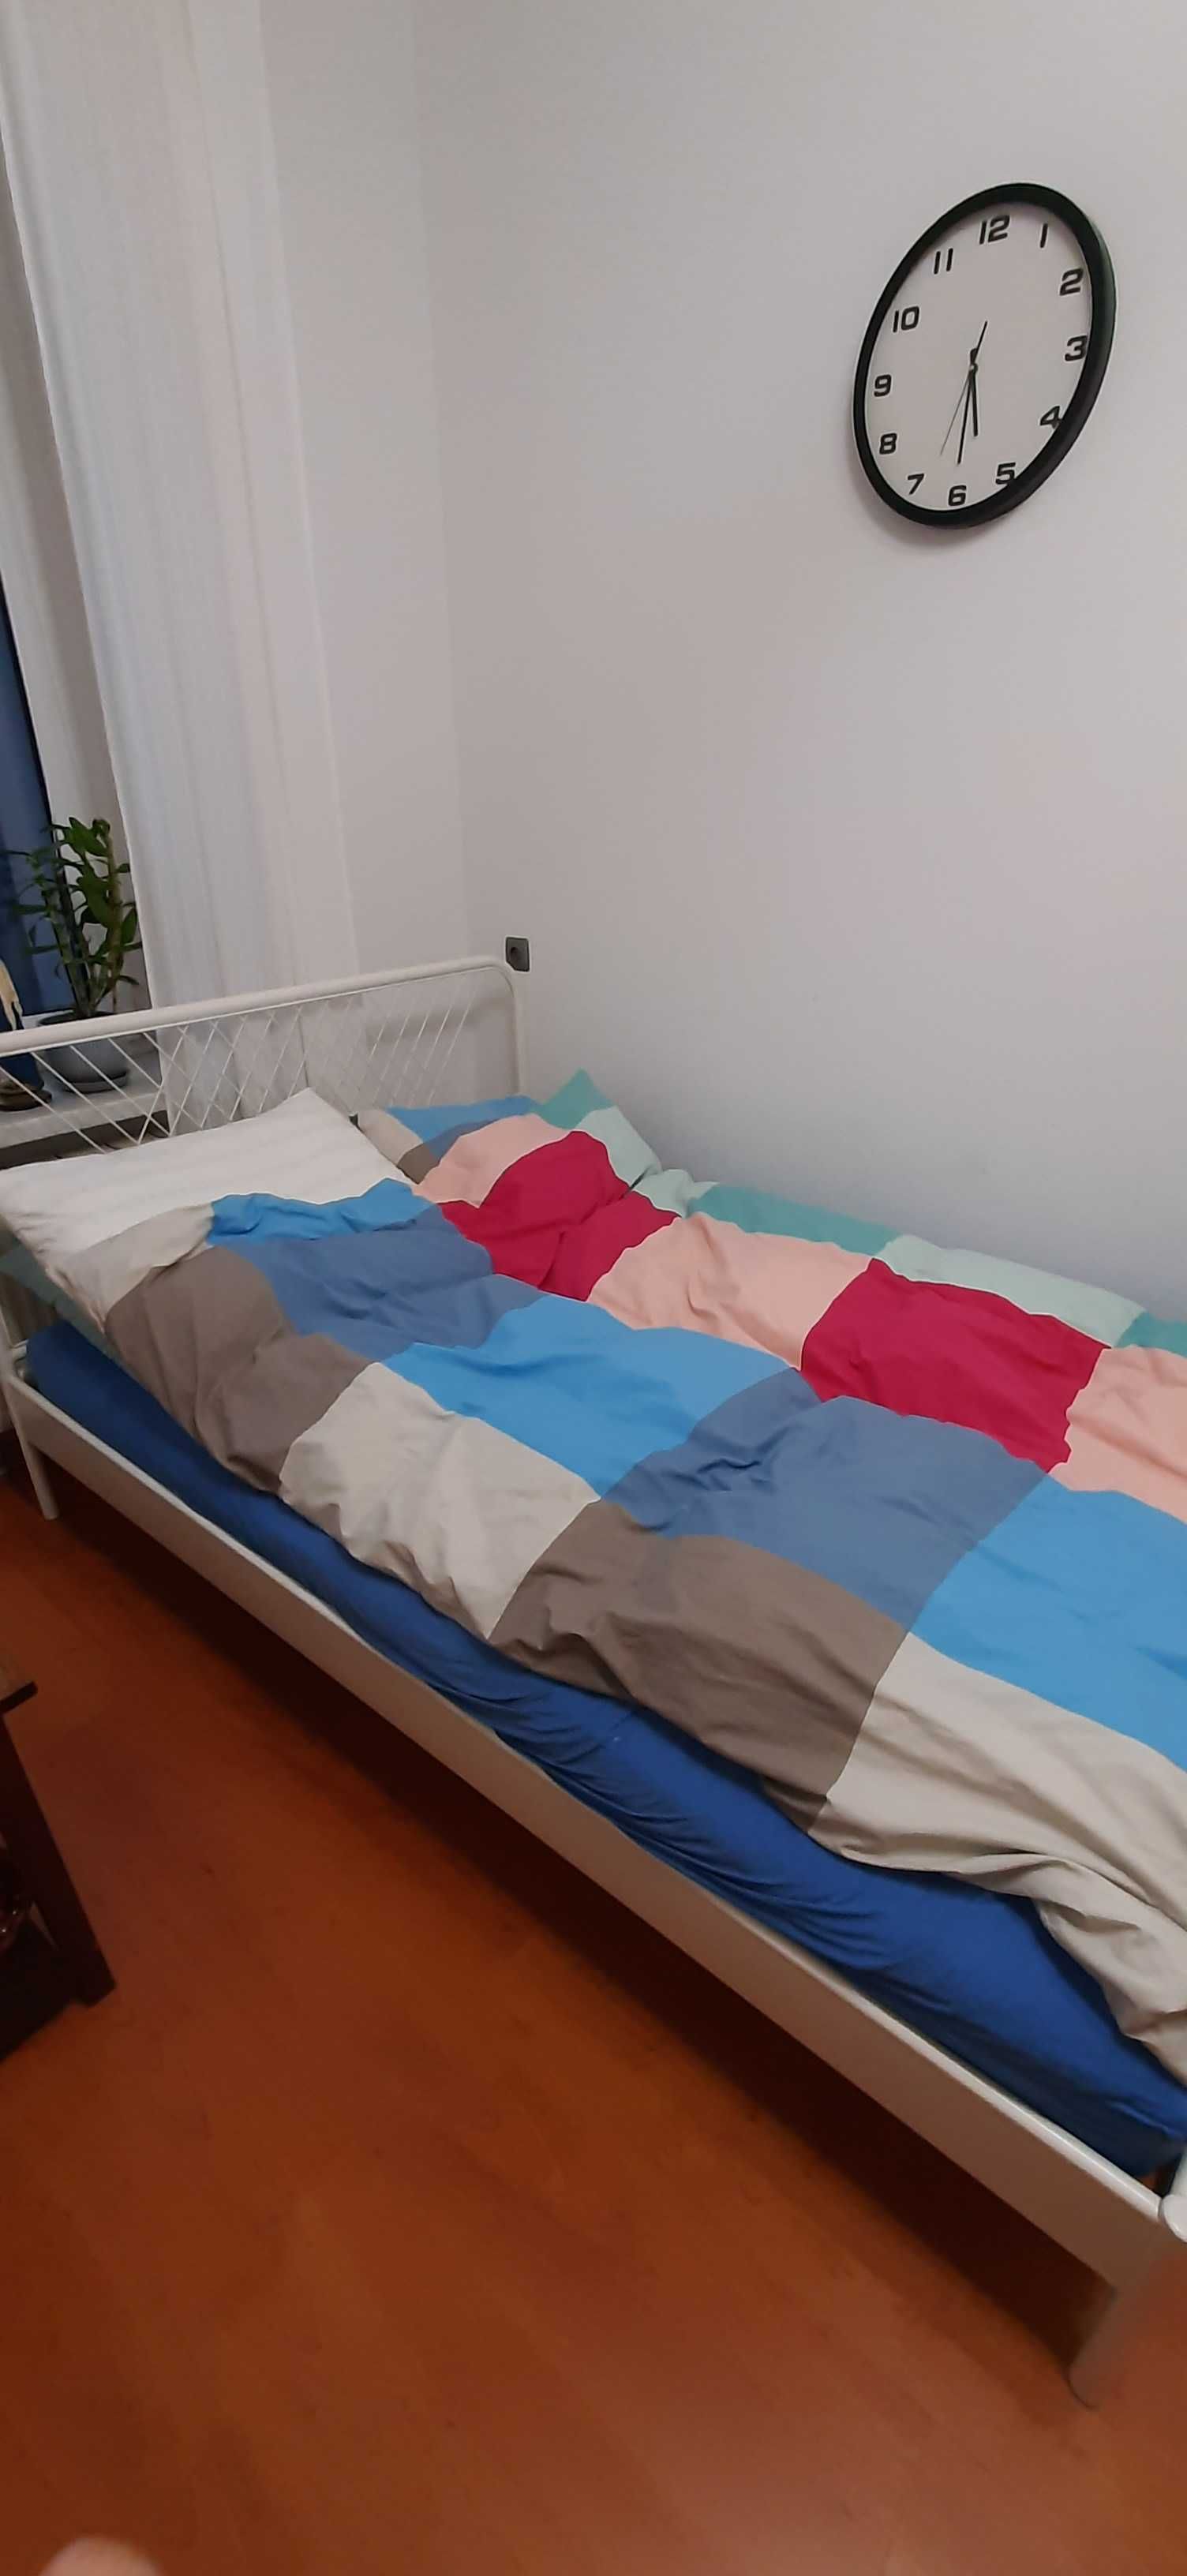 Łóżko w białym kolorze